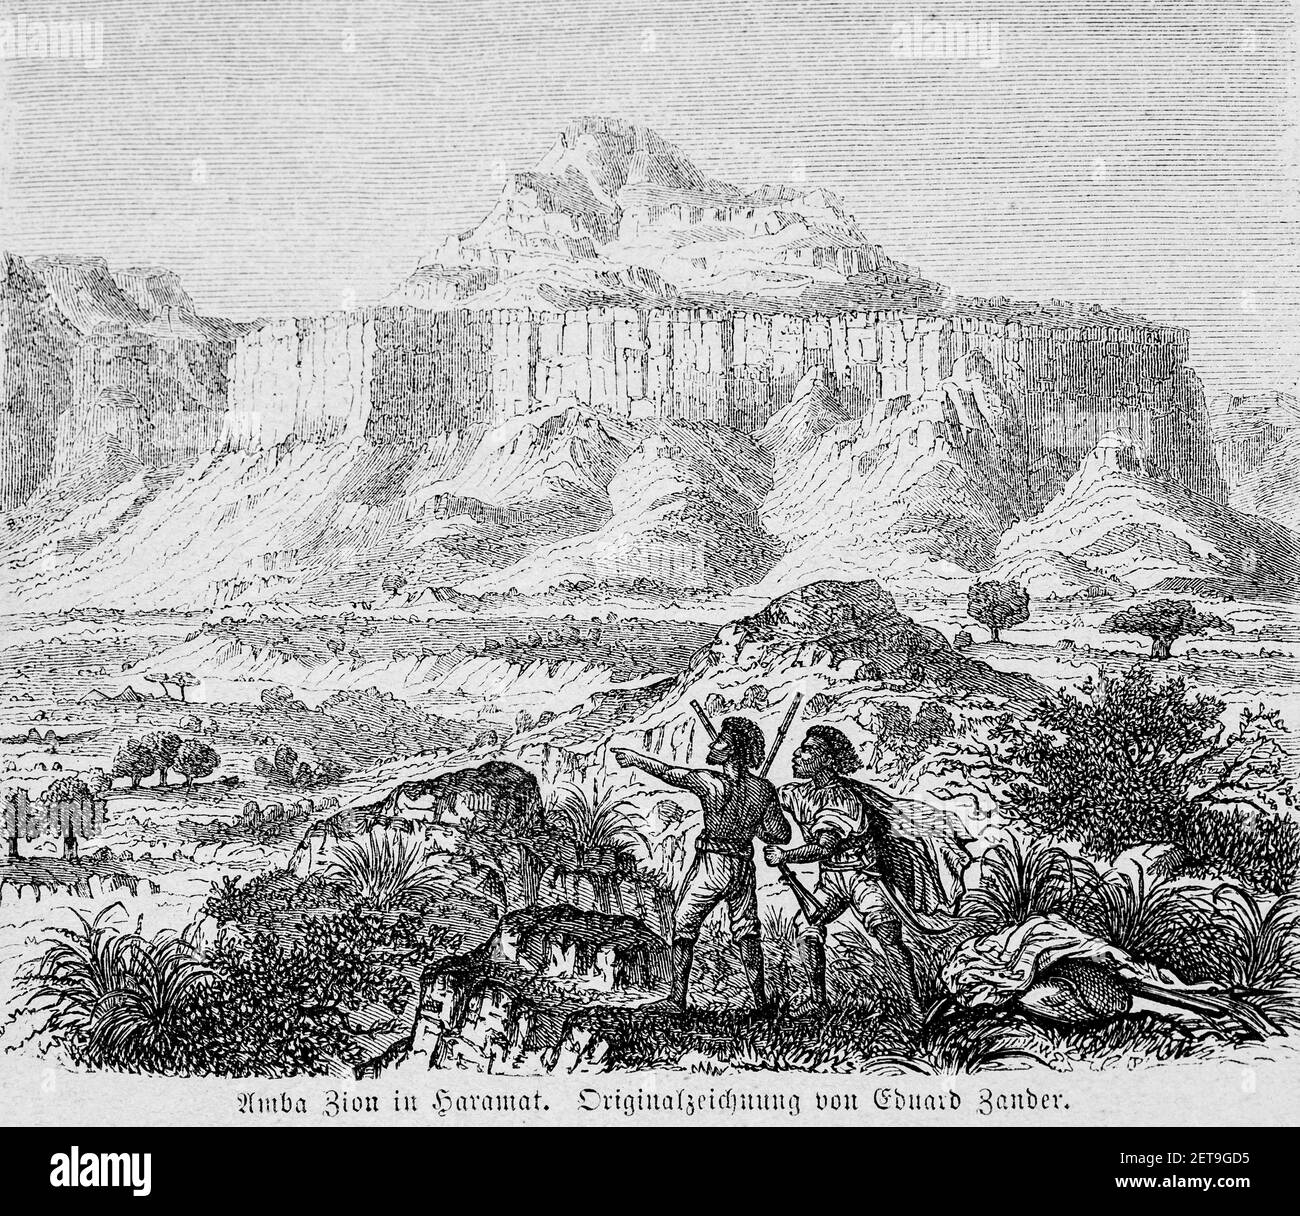 AMBA Zion o Monte Zion, Abyssina, Etiopía, África Oriental, Dr. Richard Andree, Abessinien, Land und Volk, Leipzig 1869 Foto de stock